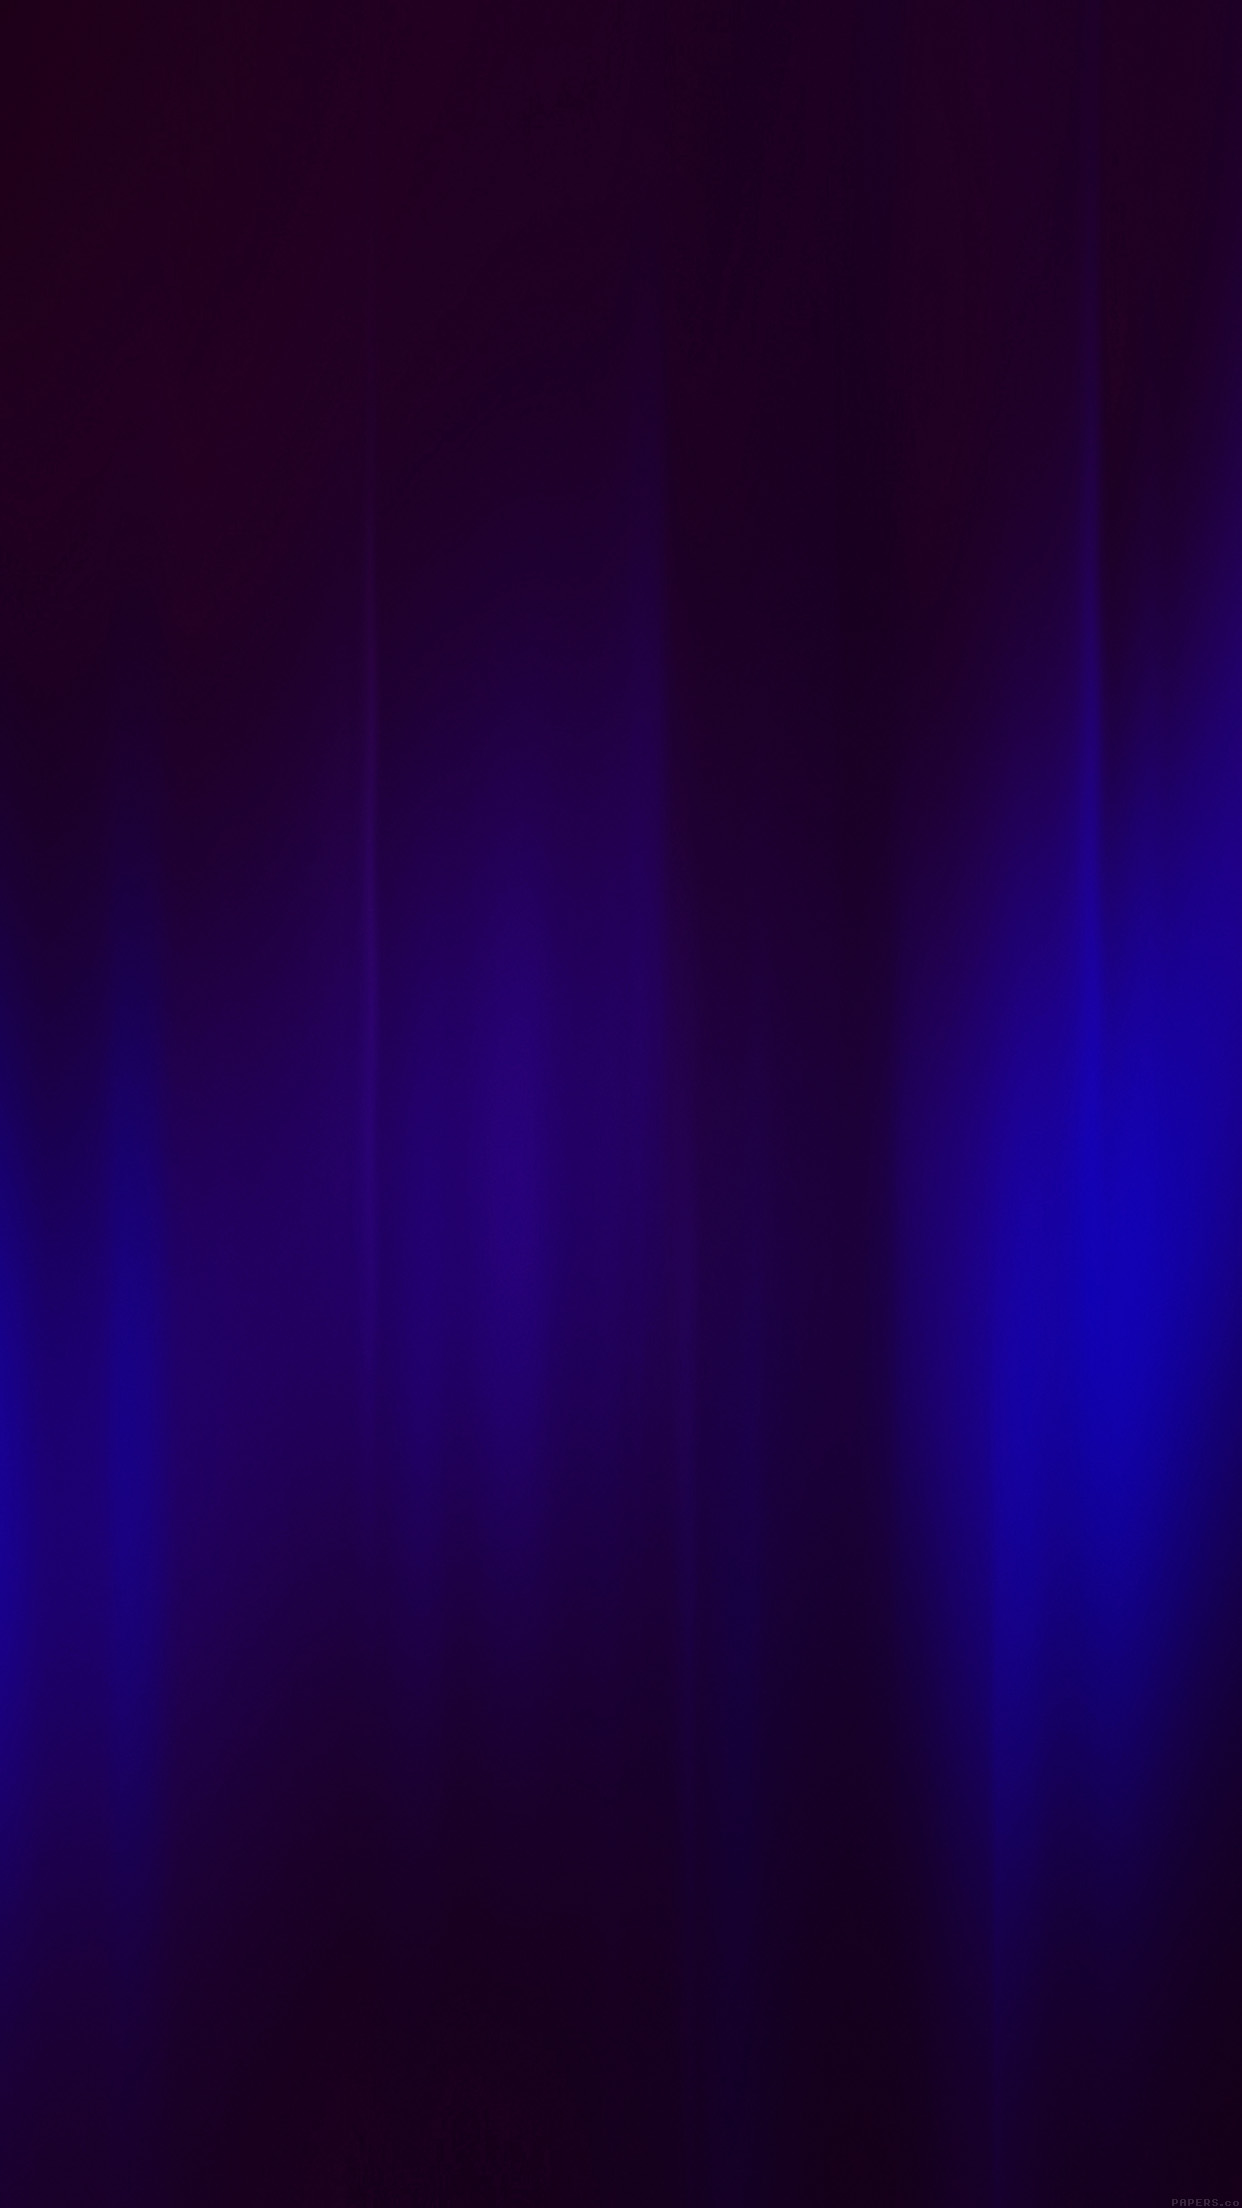 papier peint à motif bleu foncé,bleu,violet,violet,noir,bleu électrique